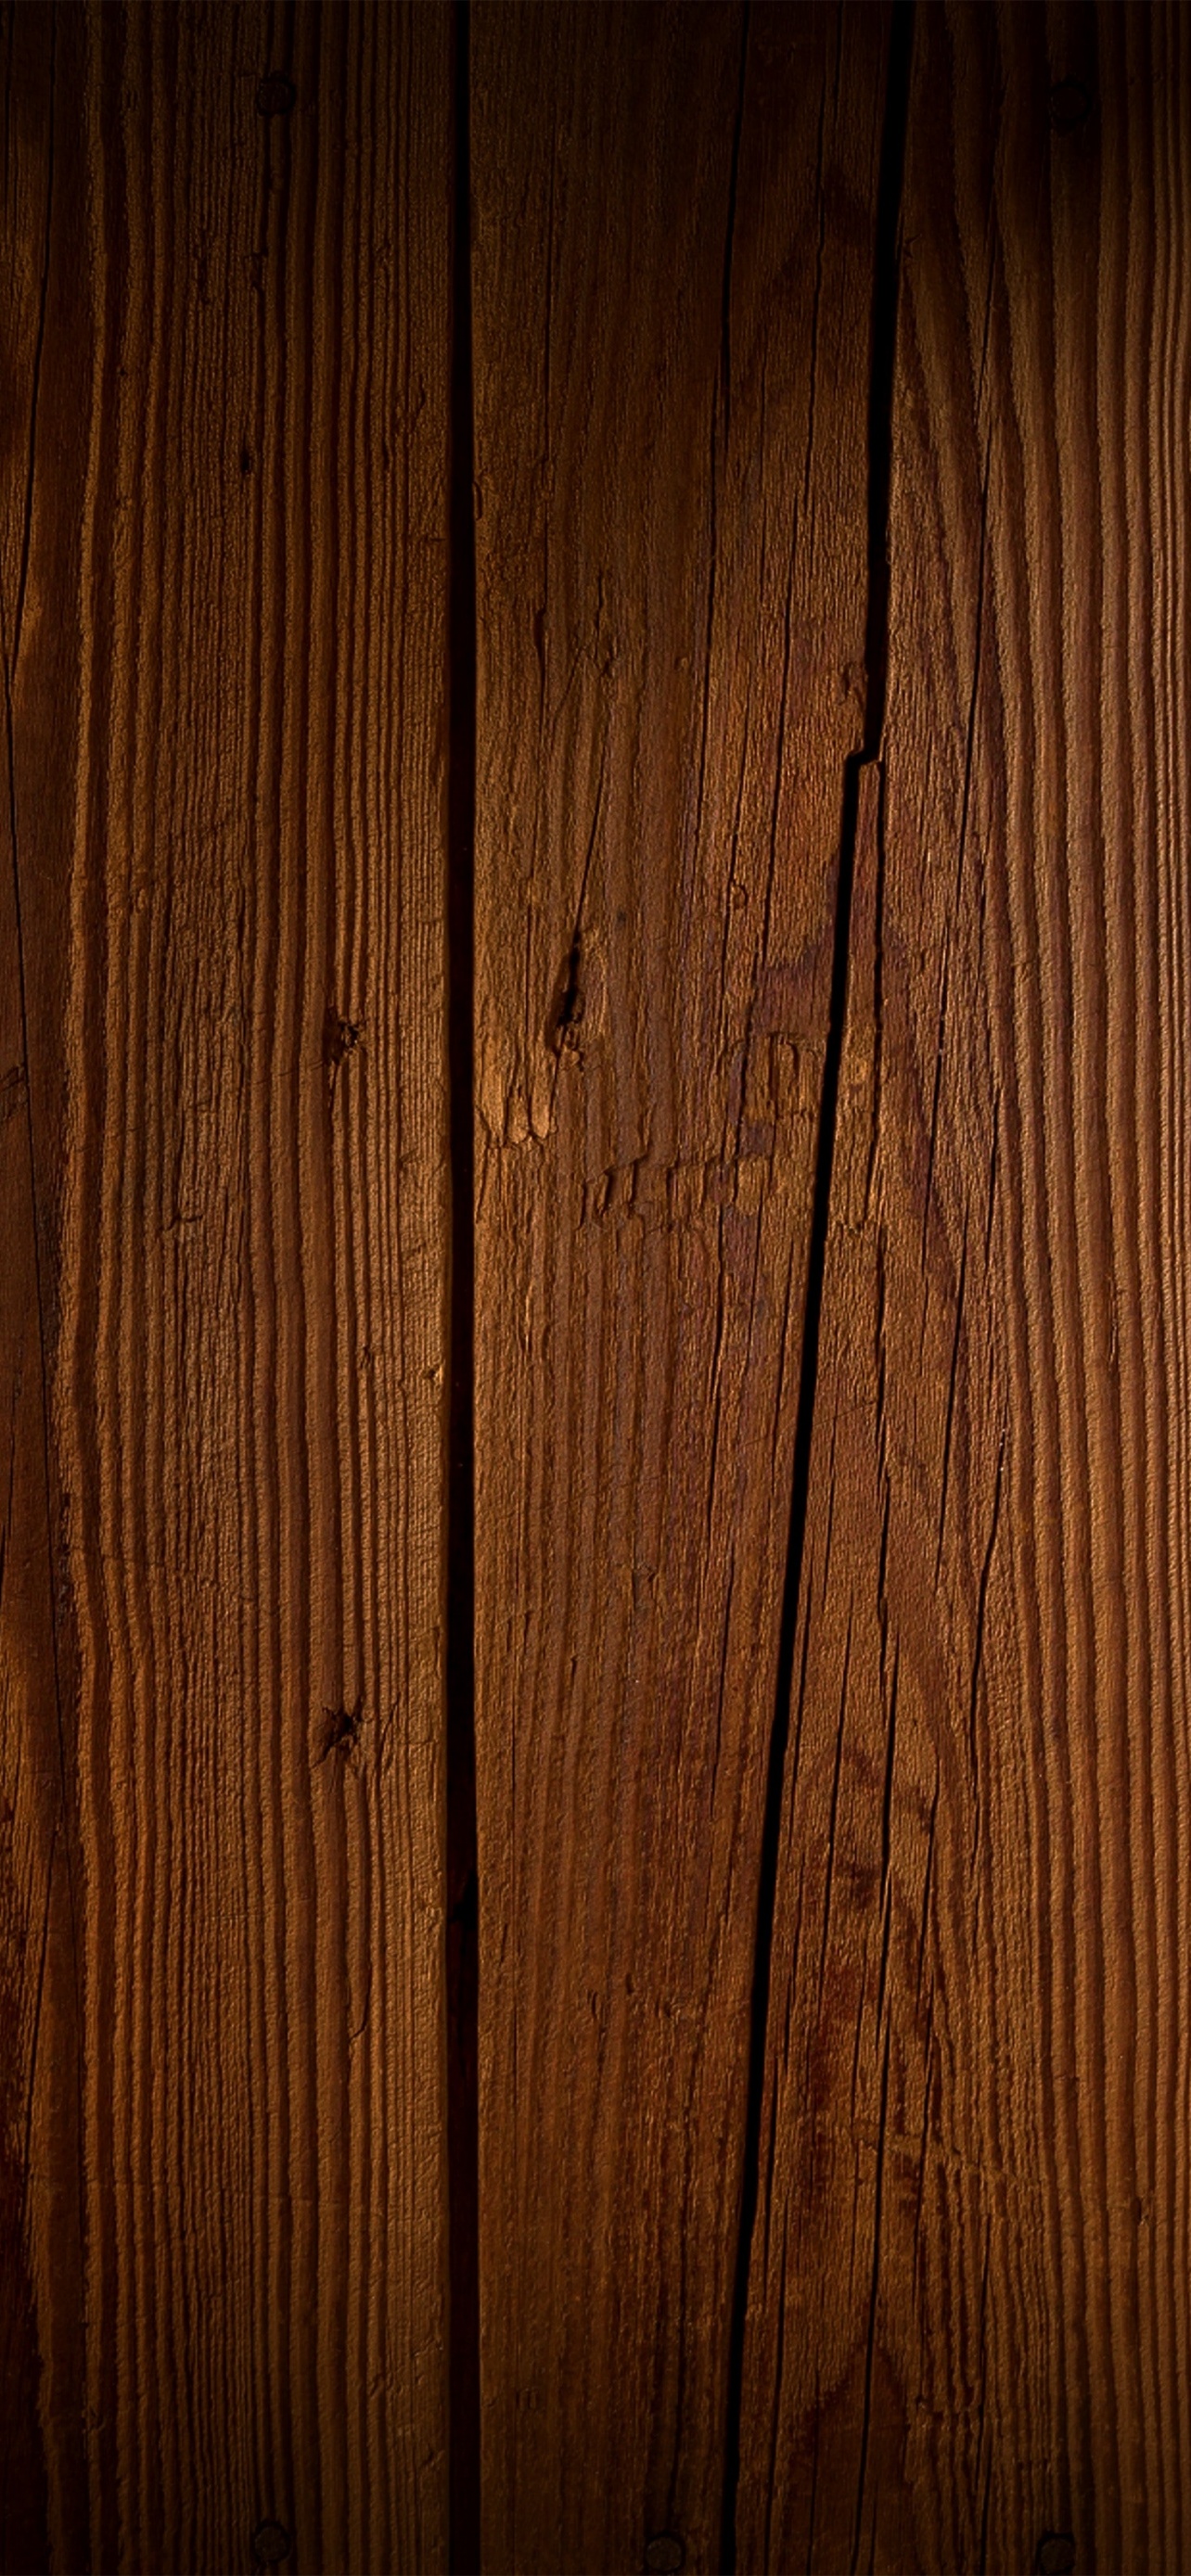 Gỗ là vật liệu quý giá và đặc biệt, từ cổ điển đến hiện đại, gỗ luôn là một vật liệu được ưa chuộng, không chỉ vì tính thẩm mỹ mà còn bởi tính bền bỉ. Hãy cùng khám phá những hình ảnh về gỗ và tìm hiểu thêm về những ứng dụng tuyệt vời của nó.